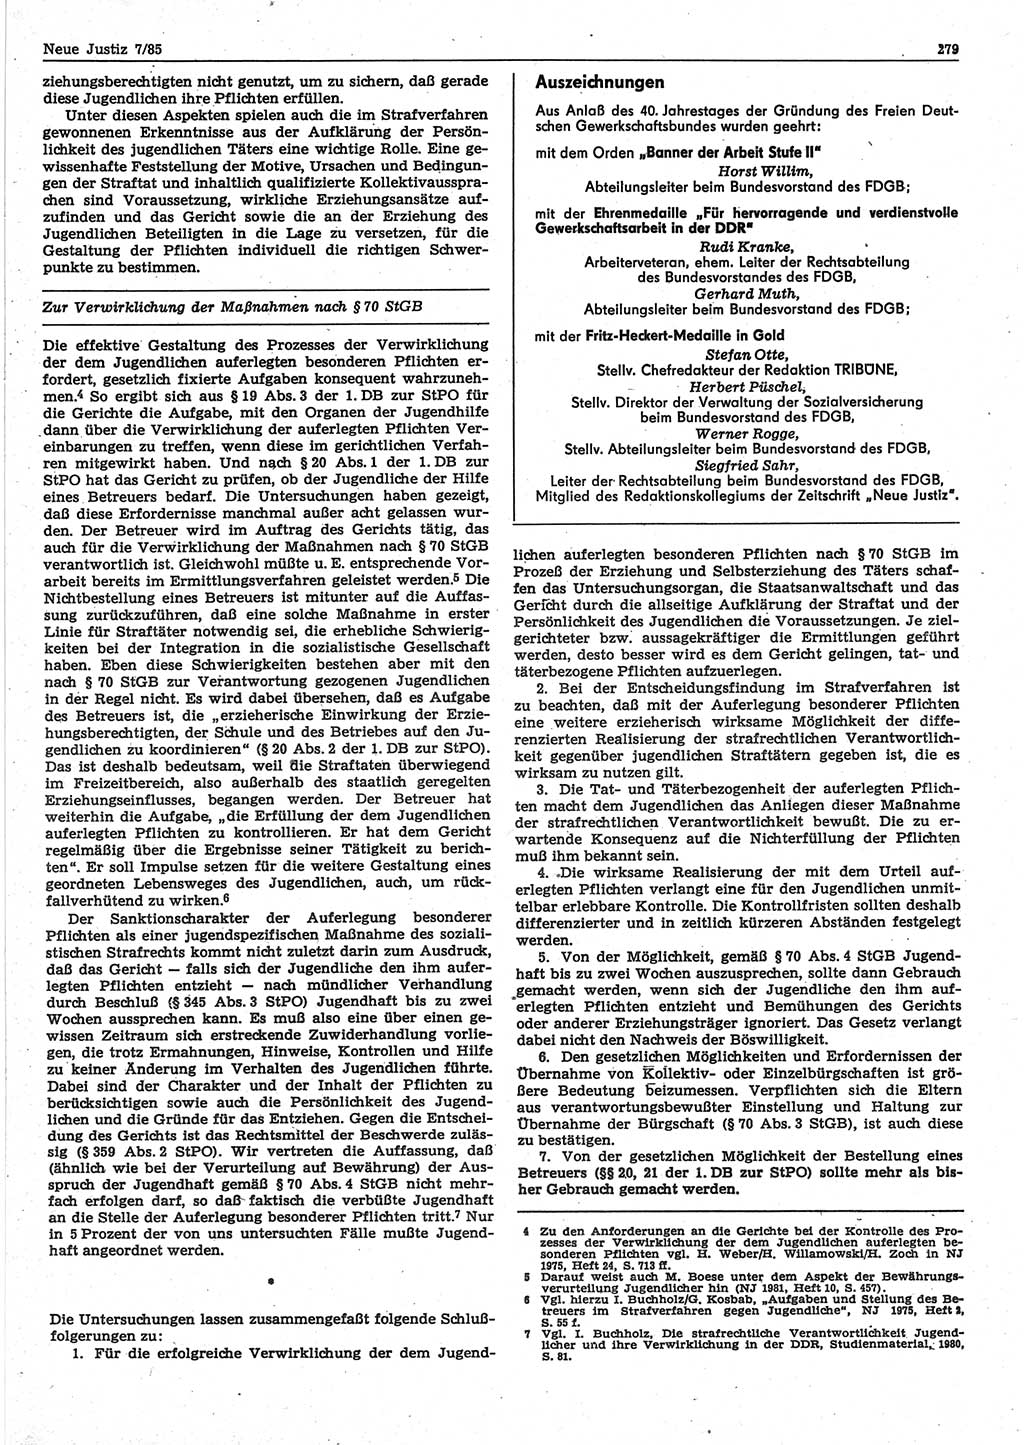 Neue Justiz (NJ), Zeitschrift für sozialistisches Recht und Gesetzlichkeit [Deutsche Demokratische Republik (DDR)], 39. Jahrgang 1985, Seite 279 (NJ DDR 1985, S. 279)